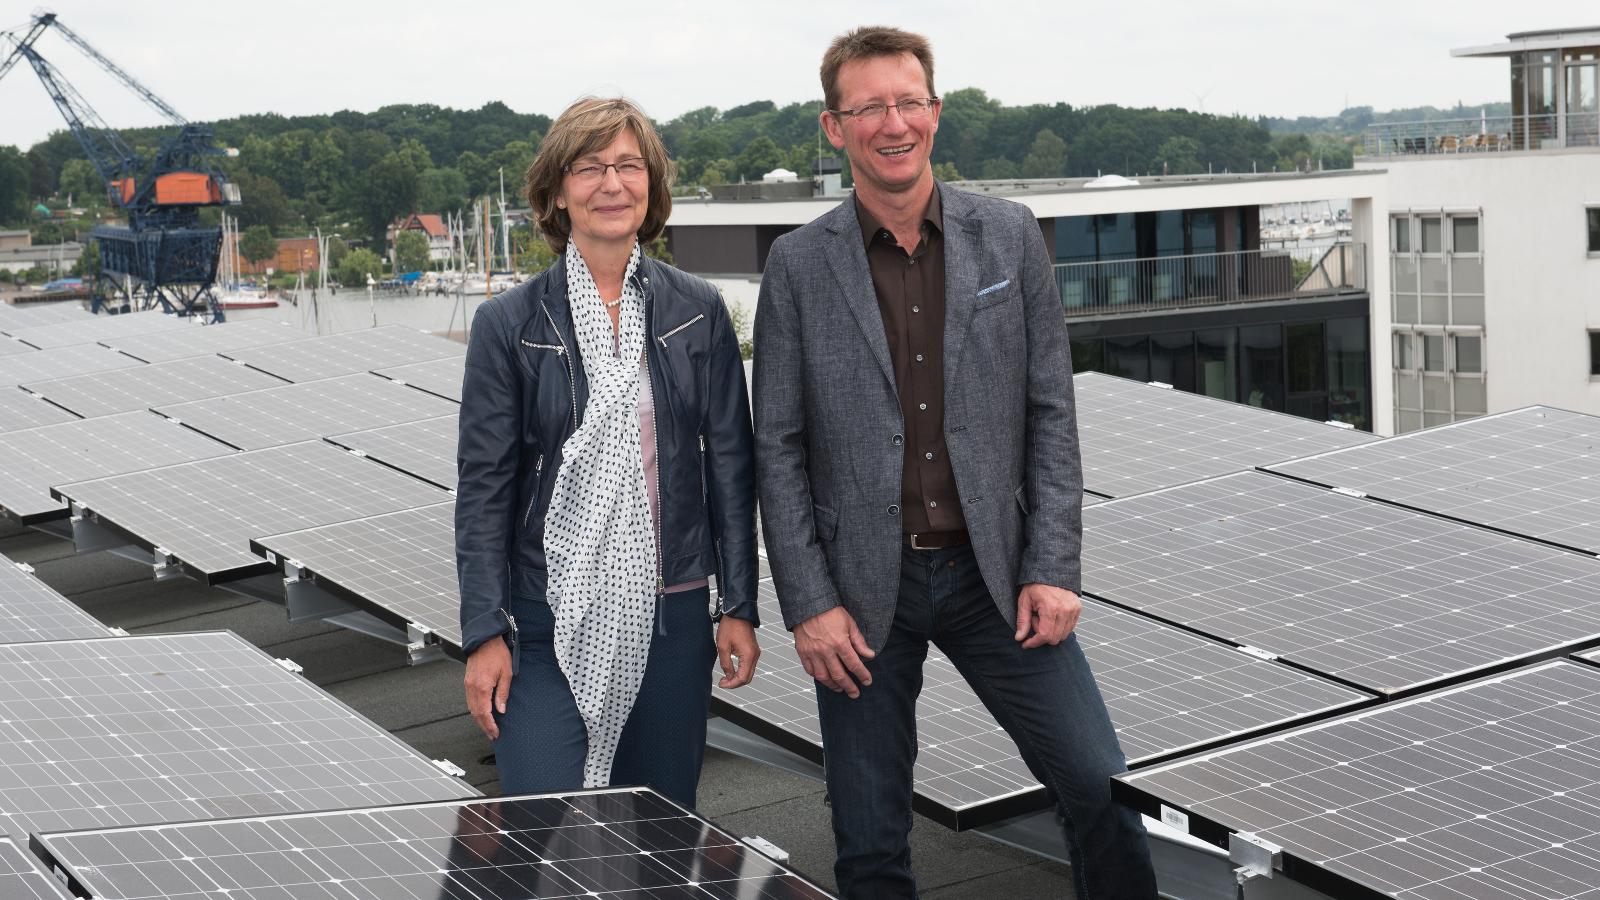 Ute Römer, Vorstand der Stadtwerke Rostock AkG, und Sven Ehrecke, Mitglied des Vorstandes der Karo gAG auf dem Dach der Frieda 23. Foto: Margit Wild